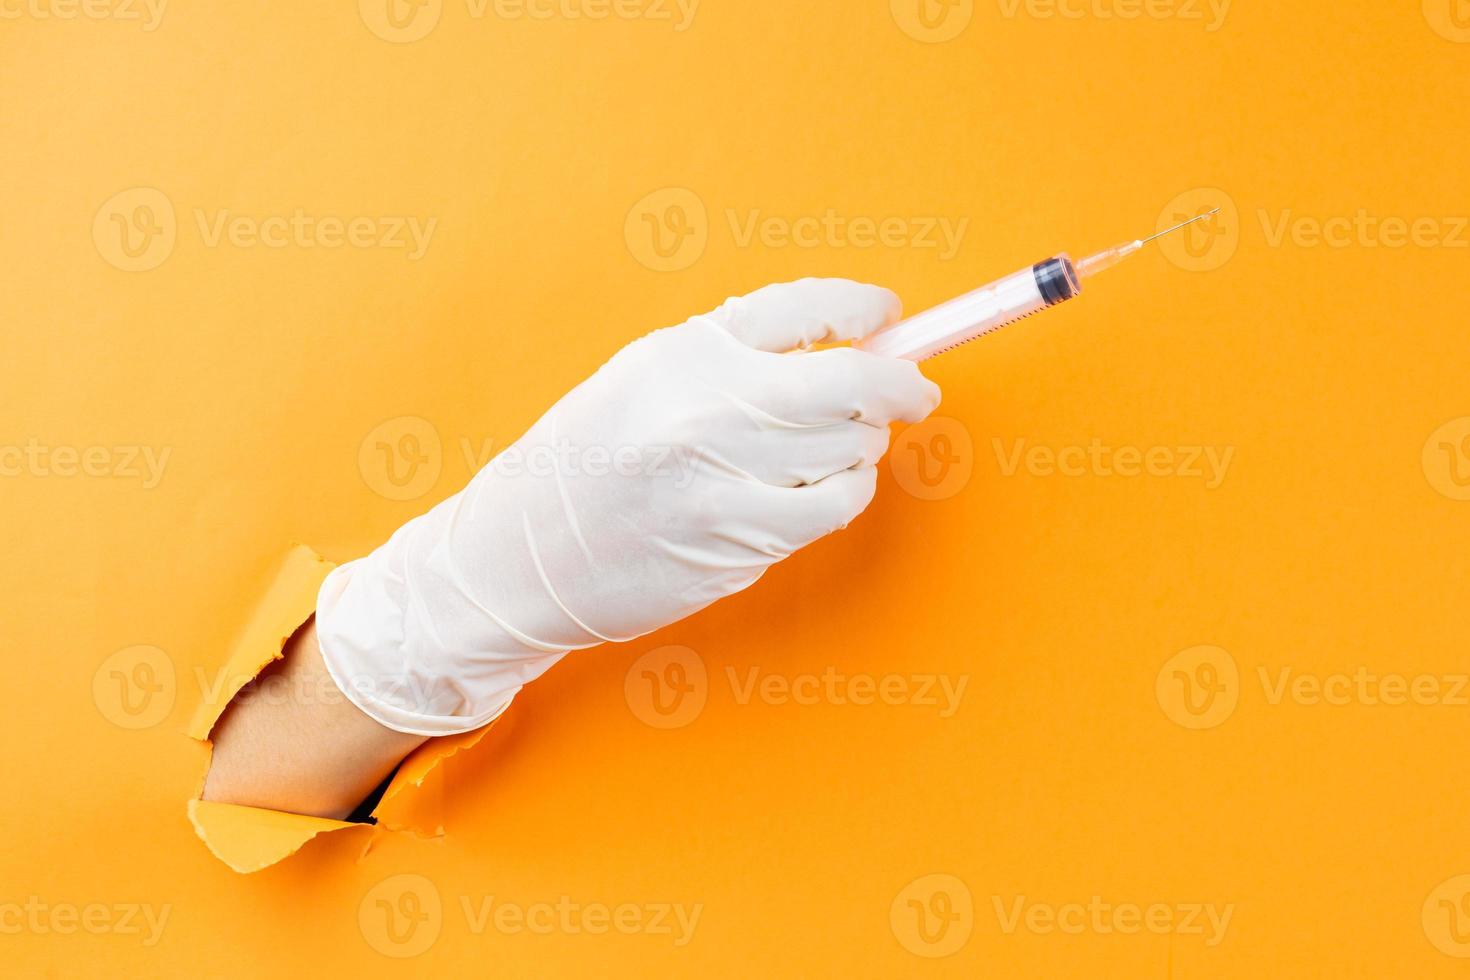 Hand holding syringe protruding from background photo